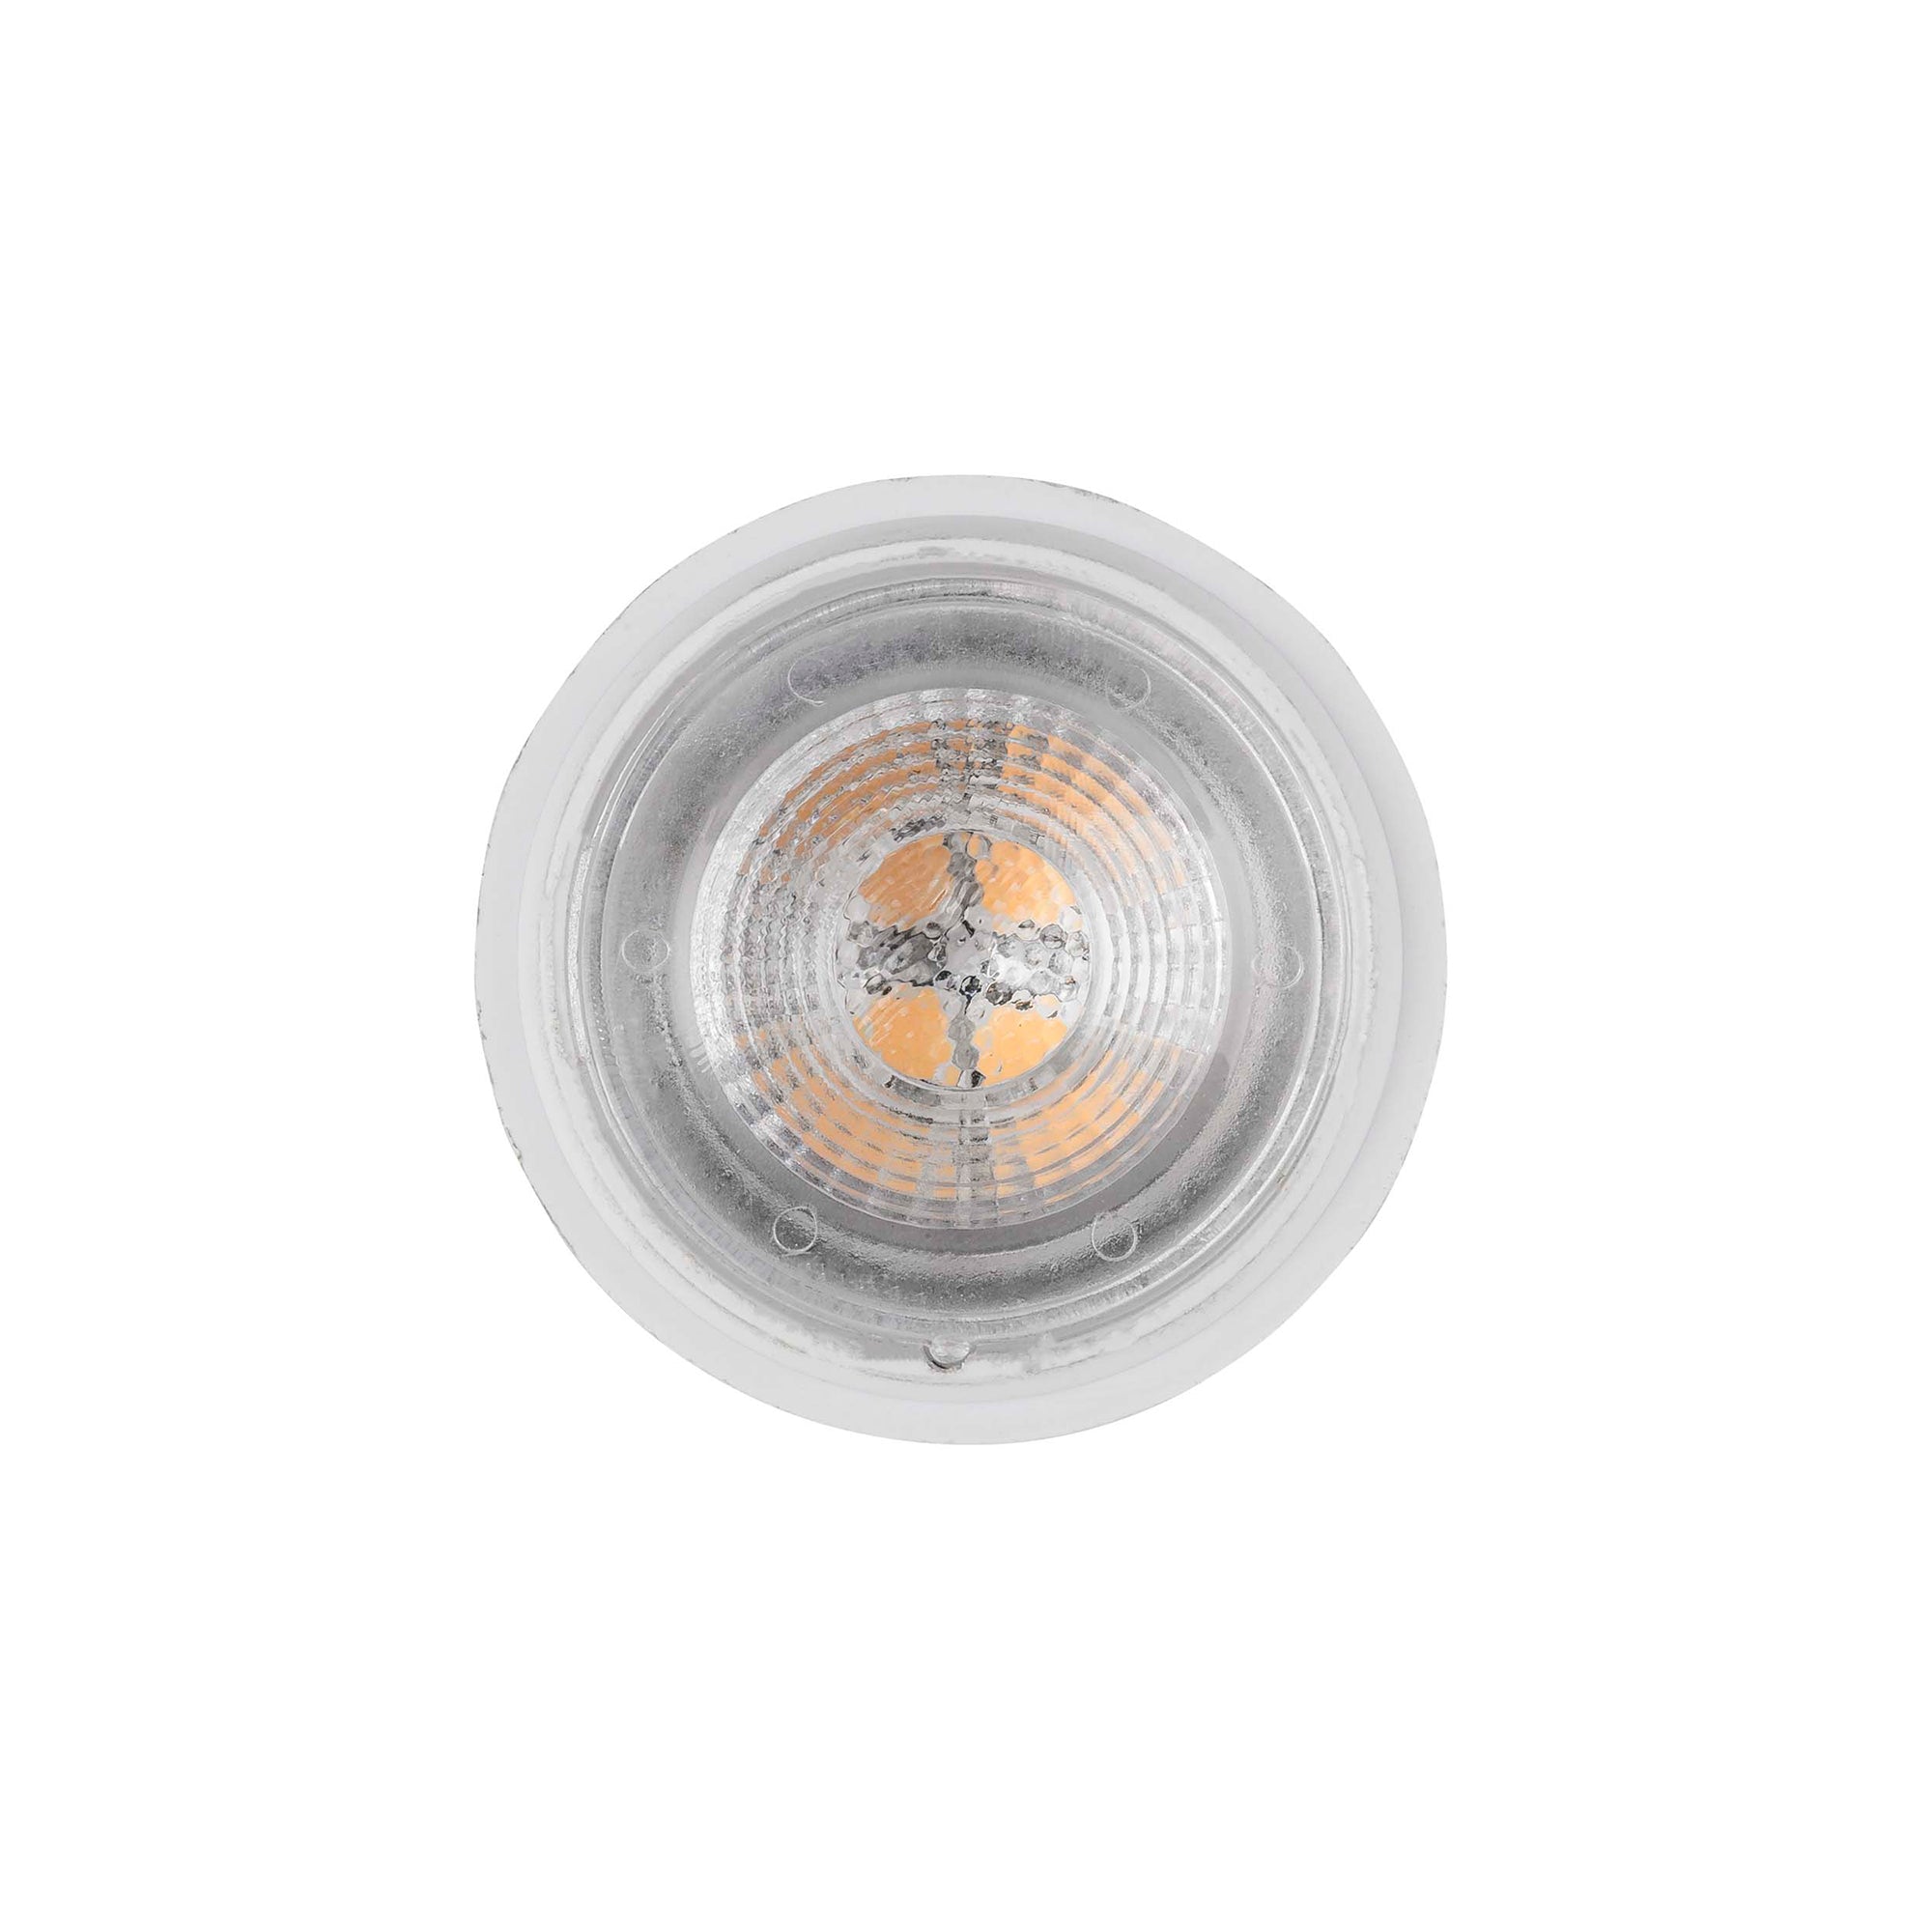 HV9311C | HV9311N | HV9311W - 3w MR11 12v DC LED Globe